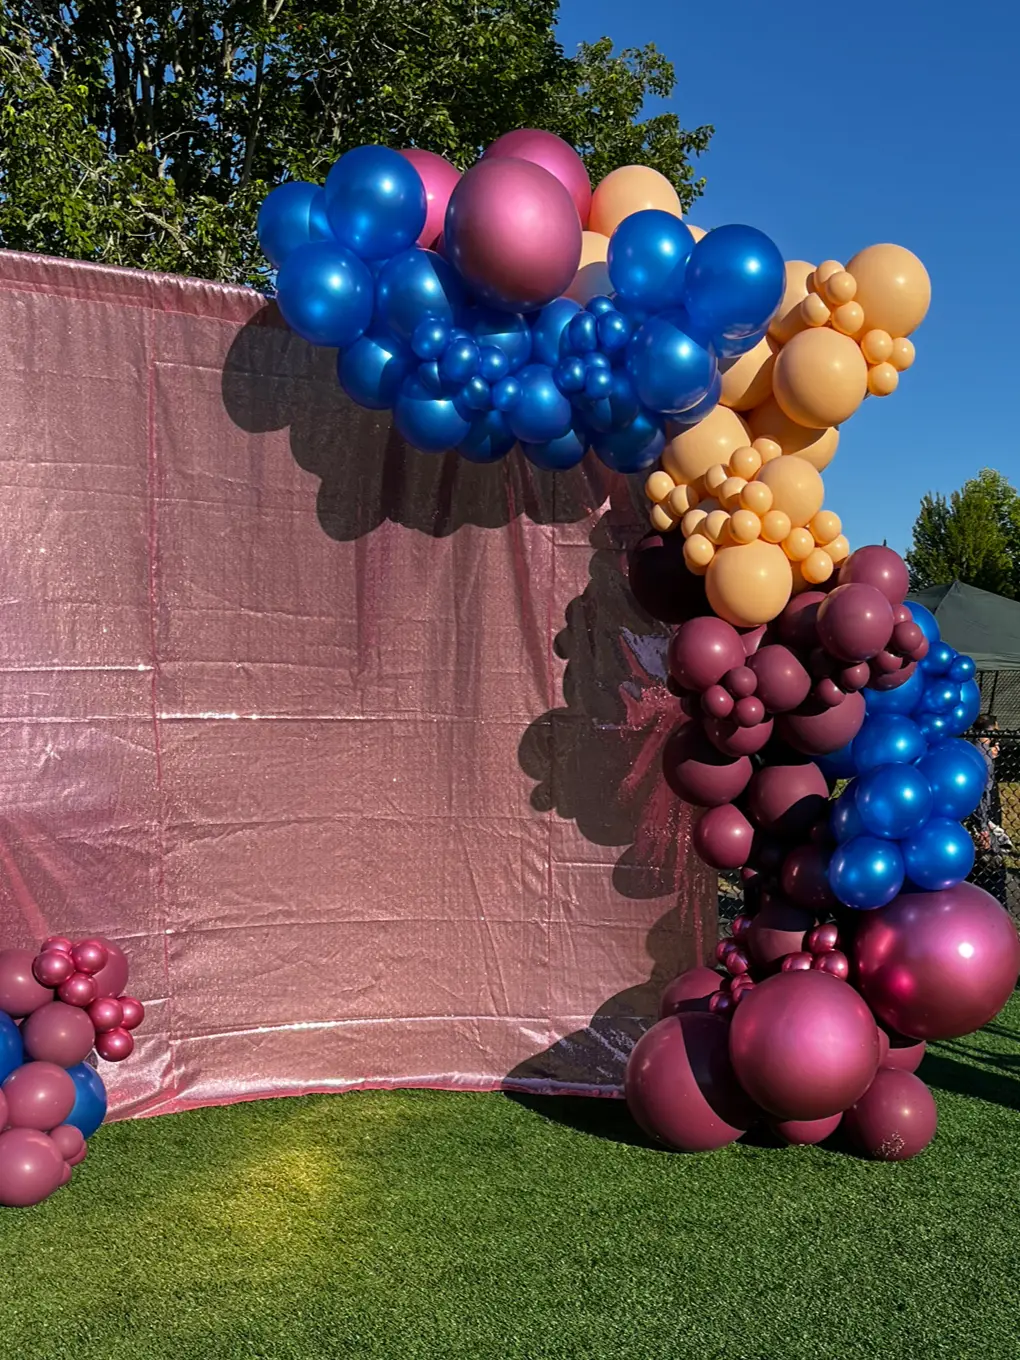 Su Balloons - Bouquet con globos Neon🎈🤩